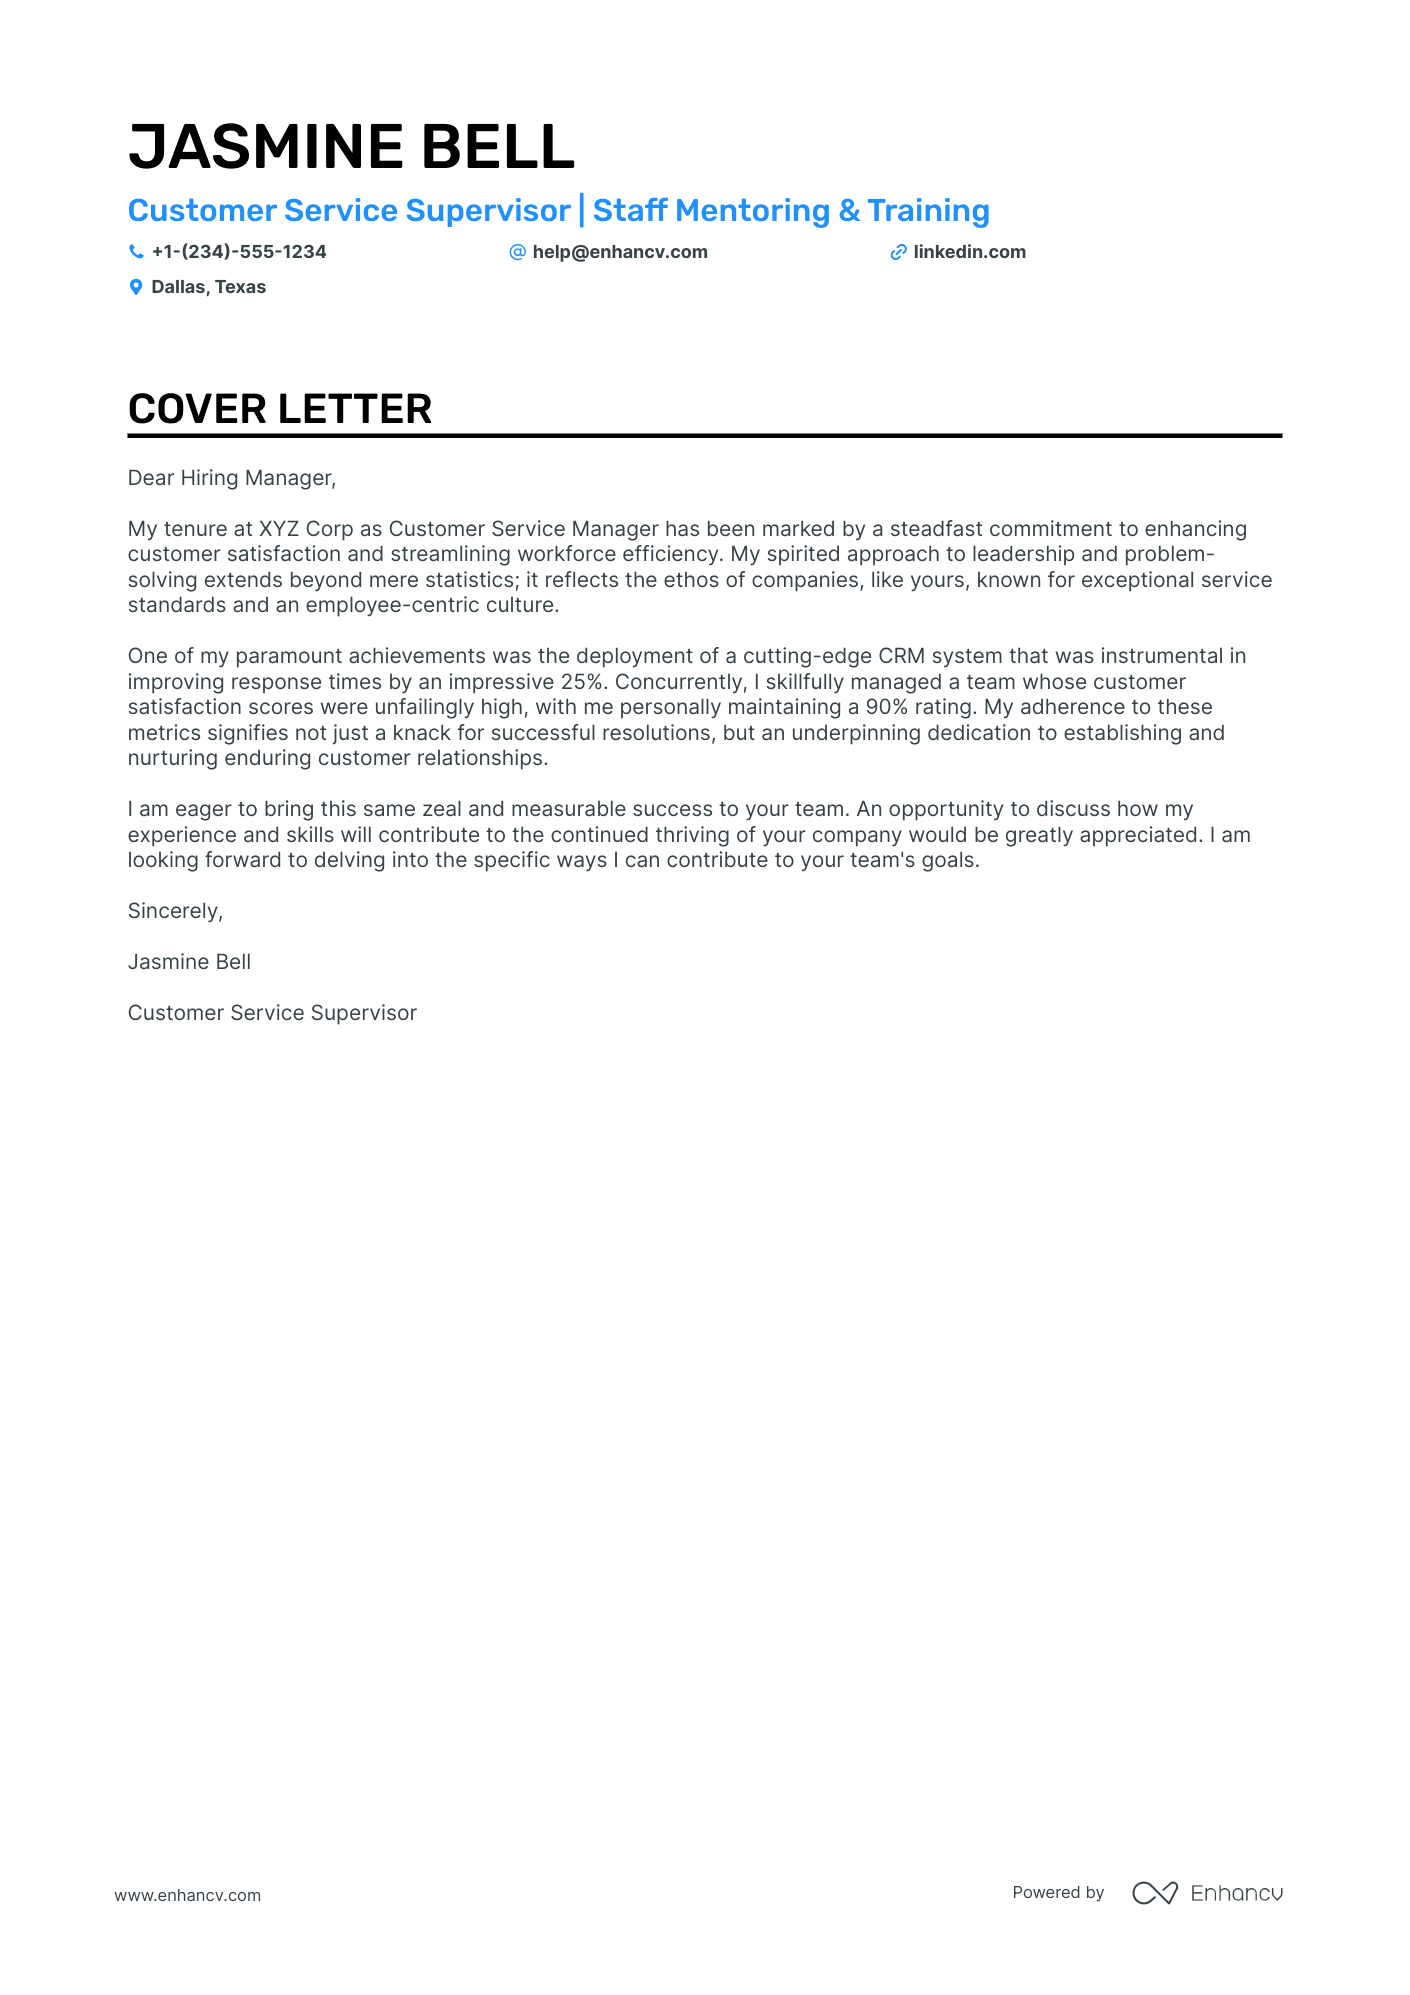 Customer Service Supervisor cover letter